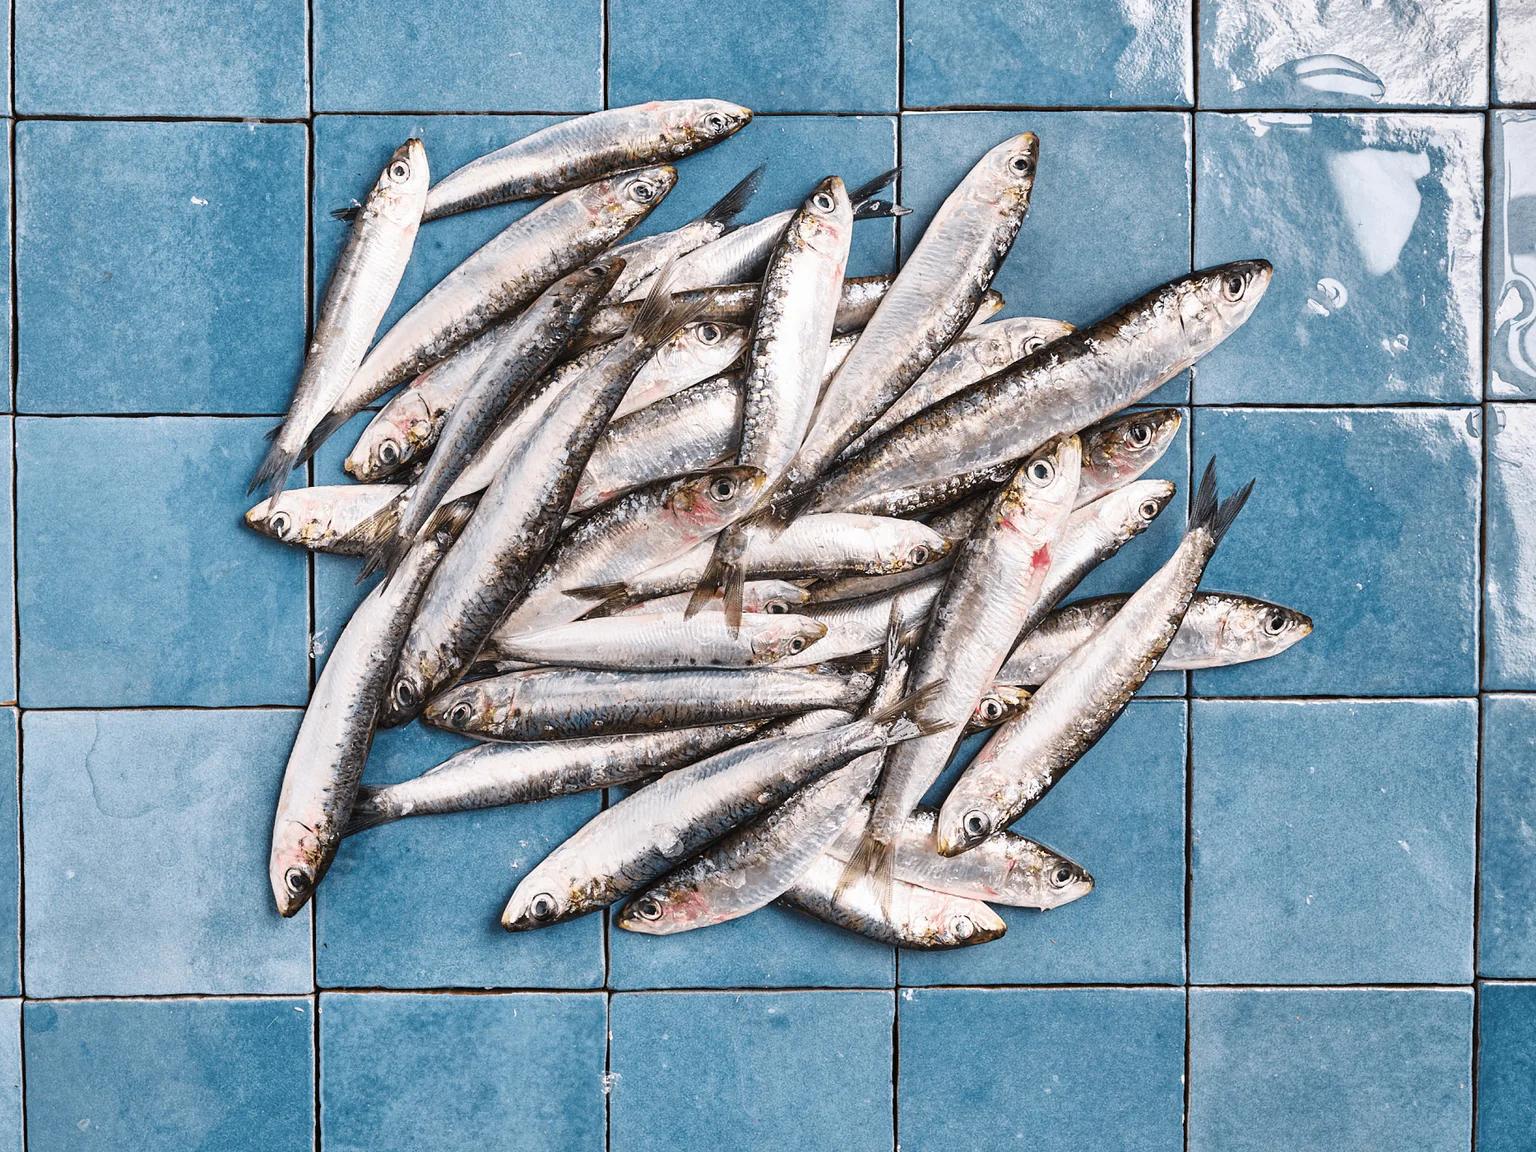 La sardine est une espèce pélagique, c’est-à-dire qu’elle vit principalement dans les eaux proches de la surface.